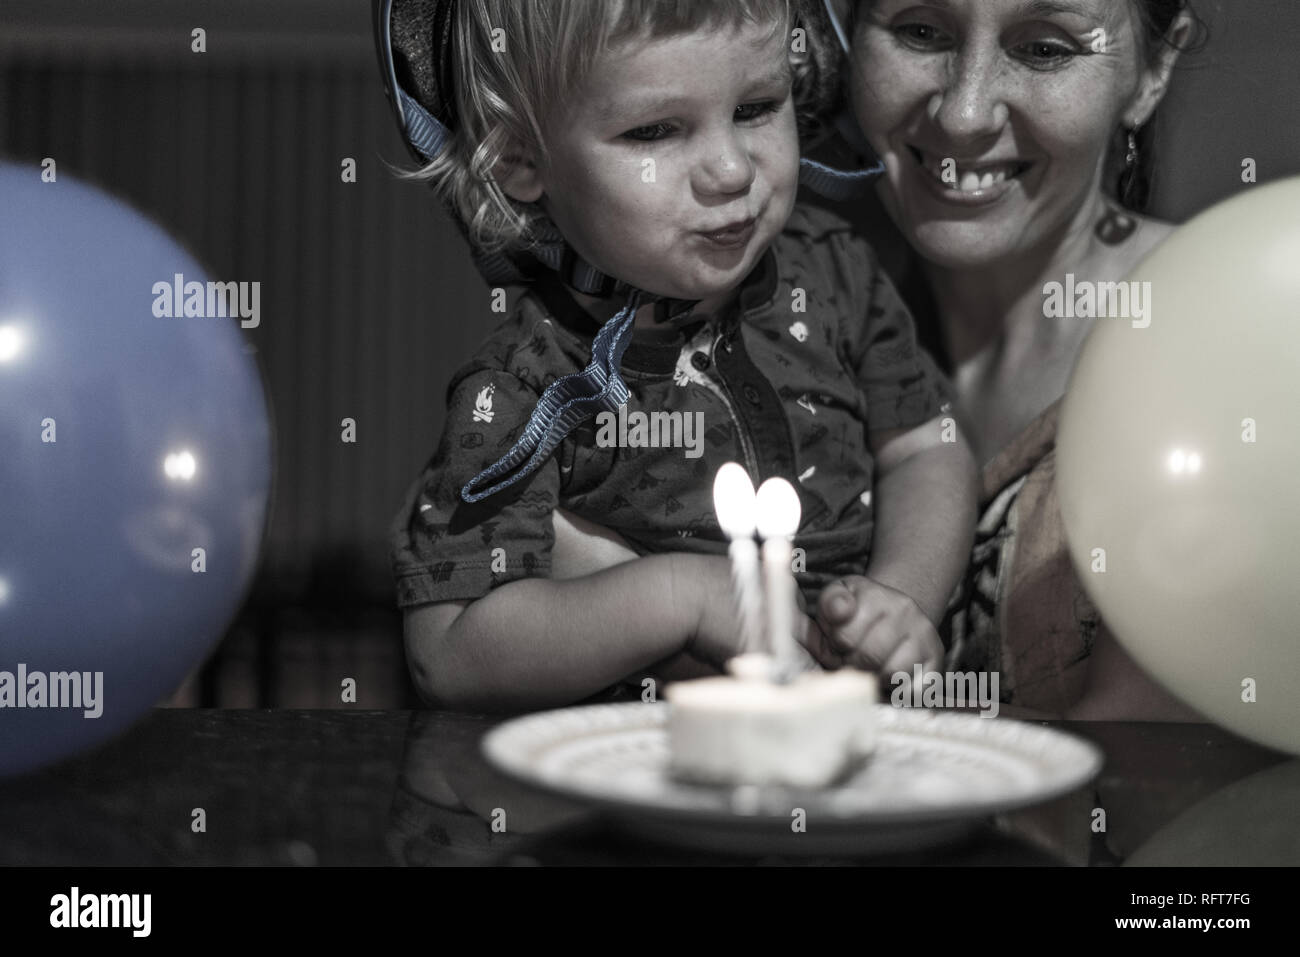 Das Porträt einer Happy Birthday Boy und seine lächelnde Mutter Abblasen des Geburtstag Kerzen. Luftballons im Vordergrund. Stockfoto